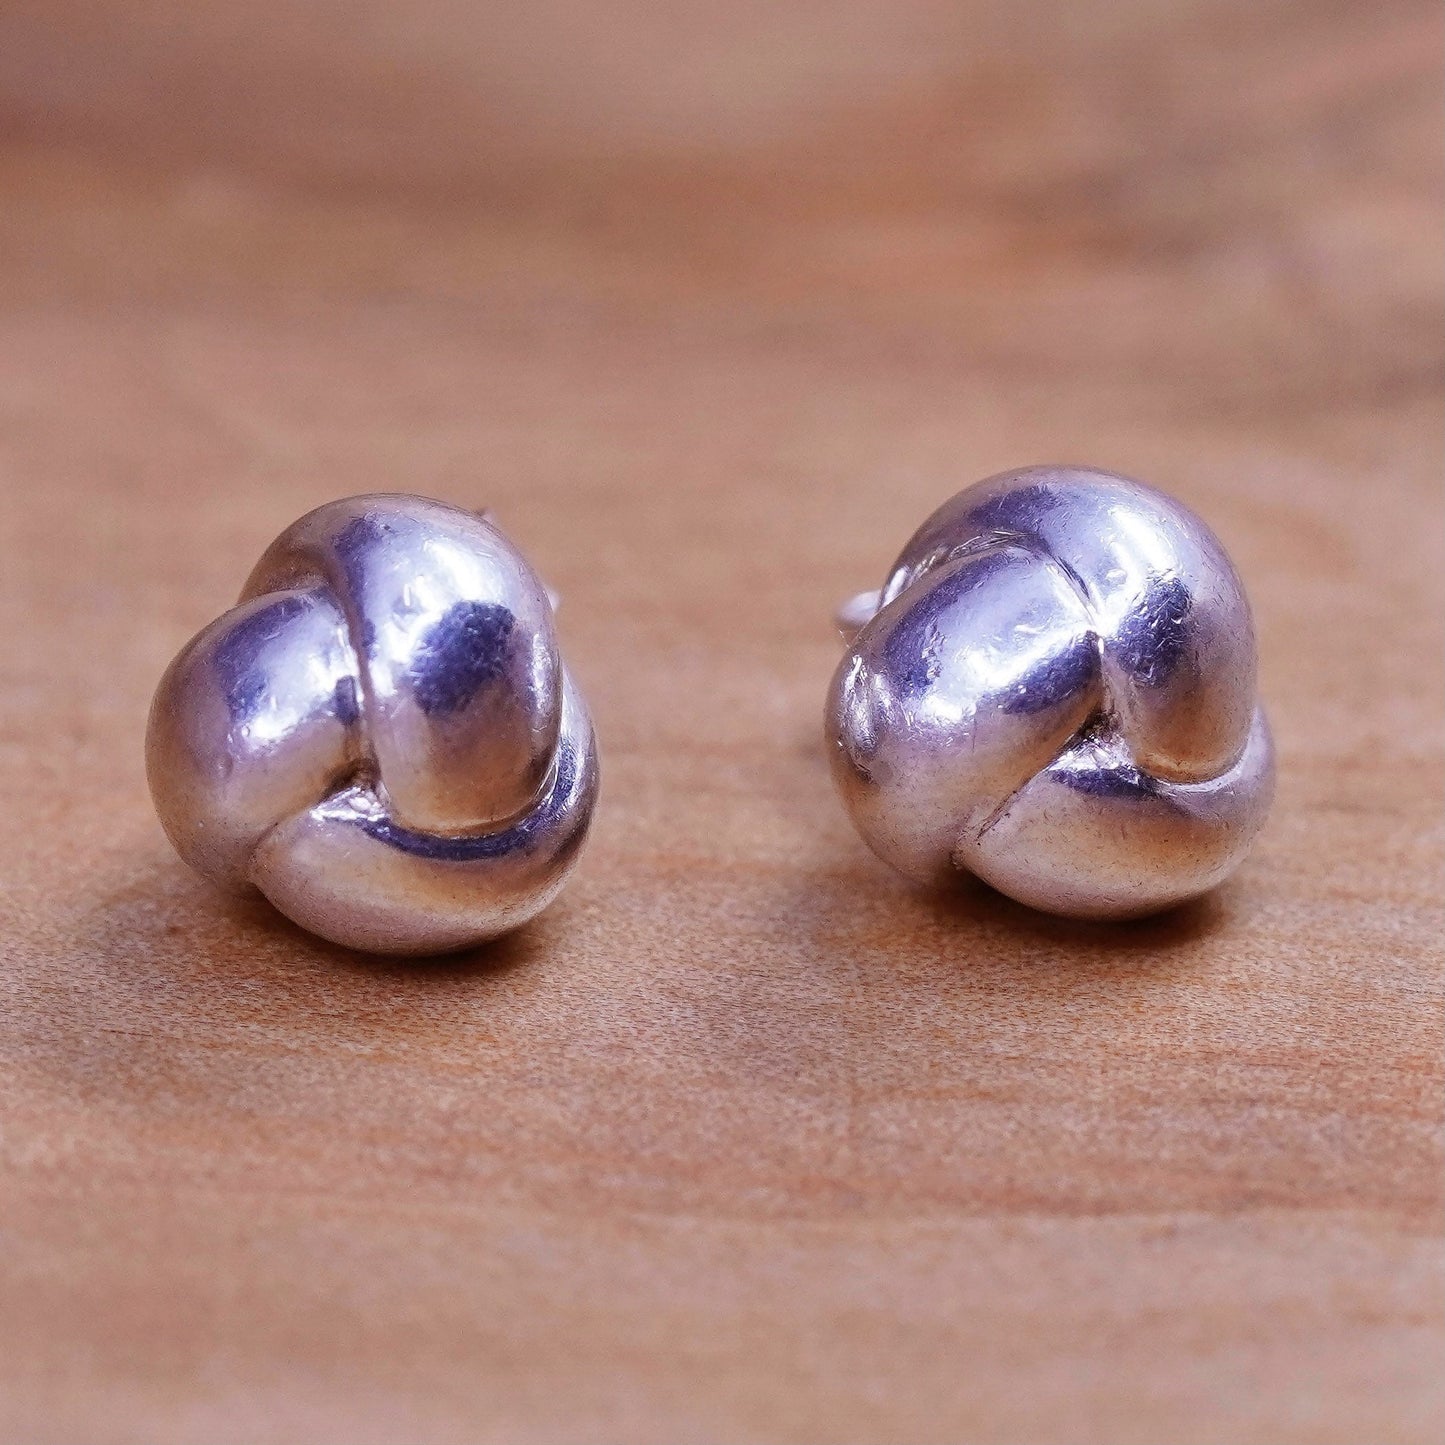 1”, vintage Sterling 925 silver heart hoop earrings with cz, 925 huggie